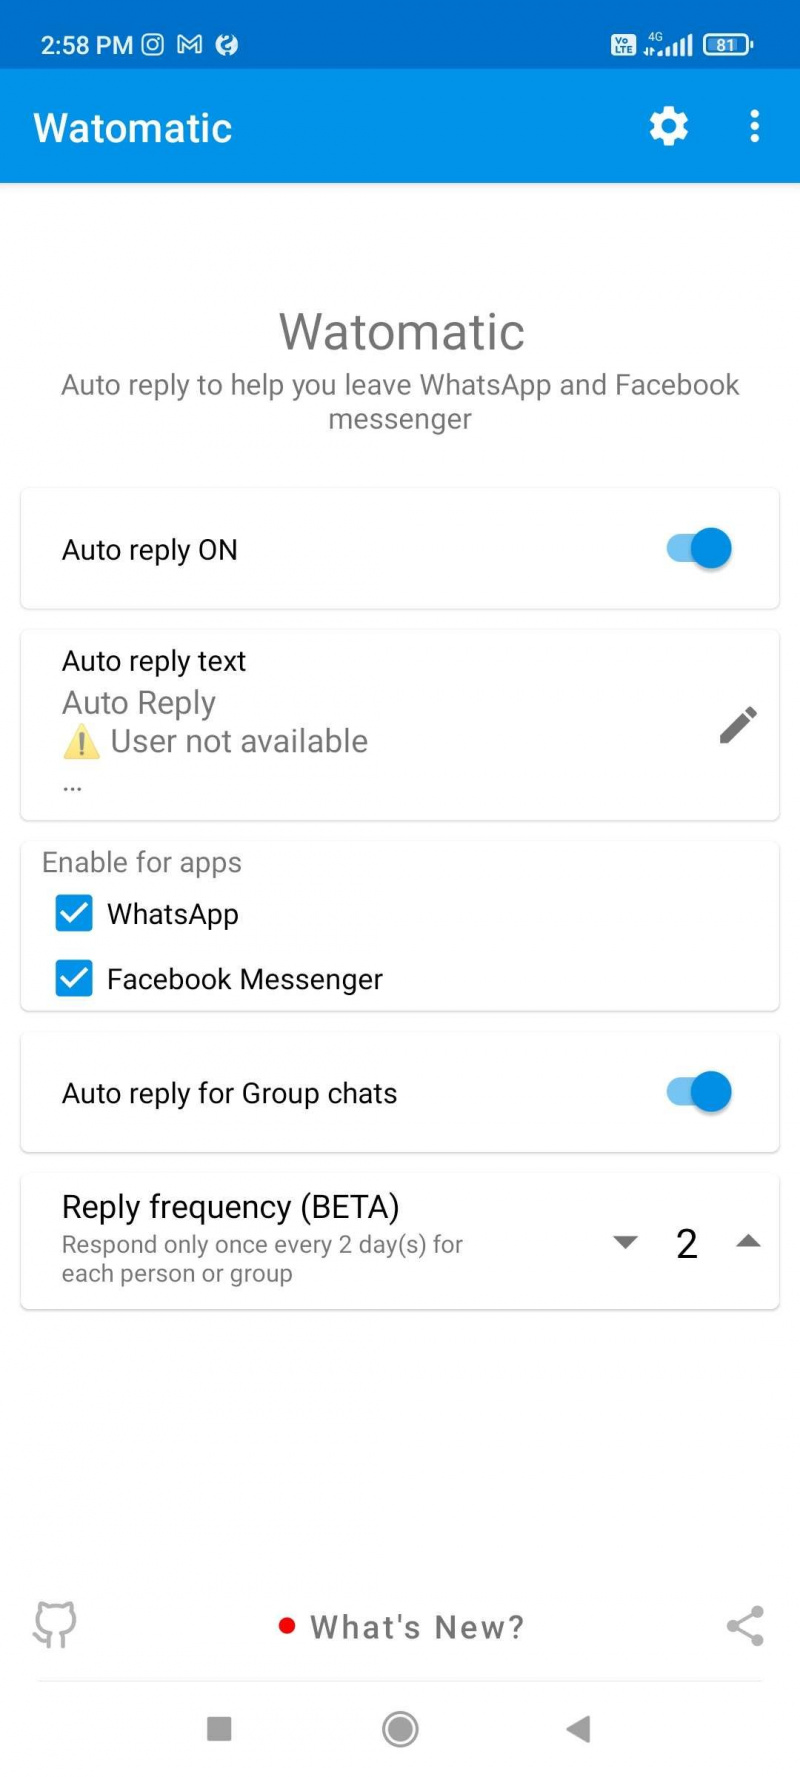   Watomatic は、WhatsApp で送信される自動返信メッセージを設定する最も簡単な方法です。're unavailable